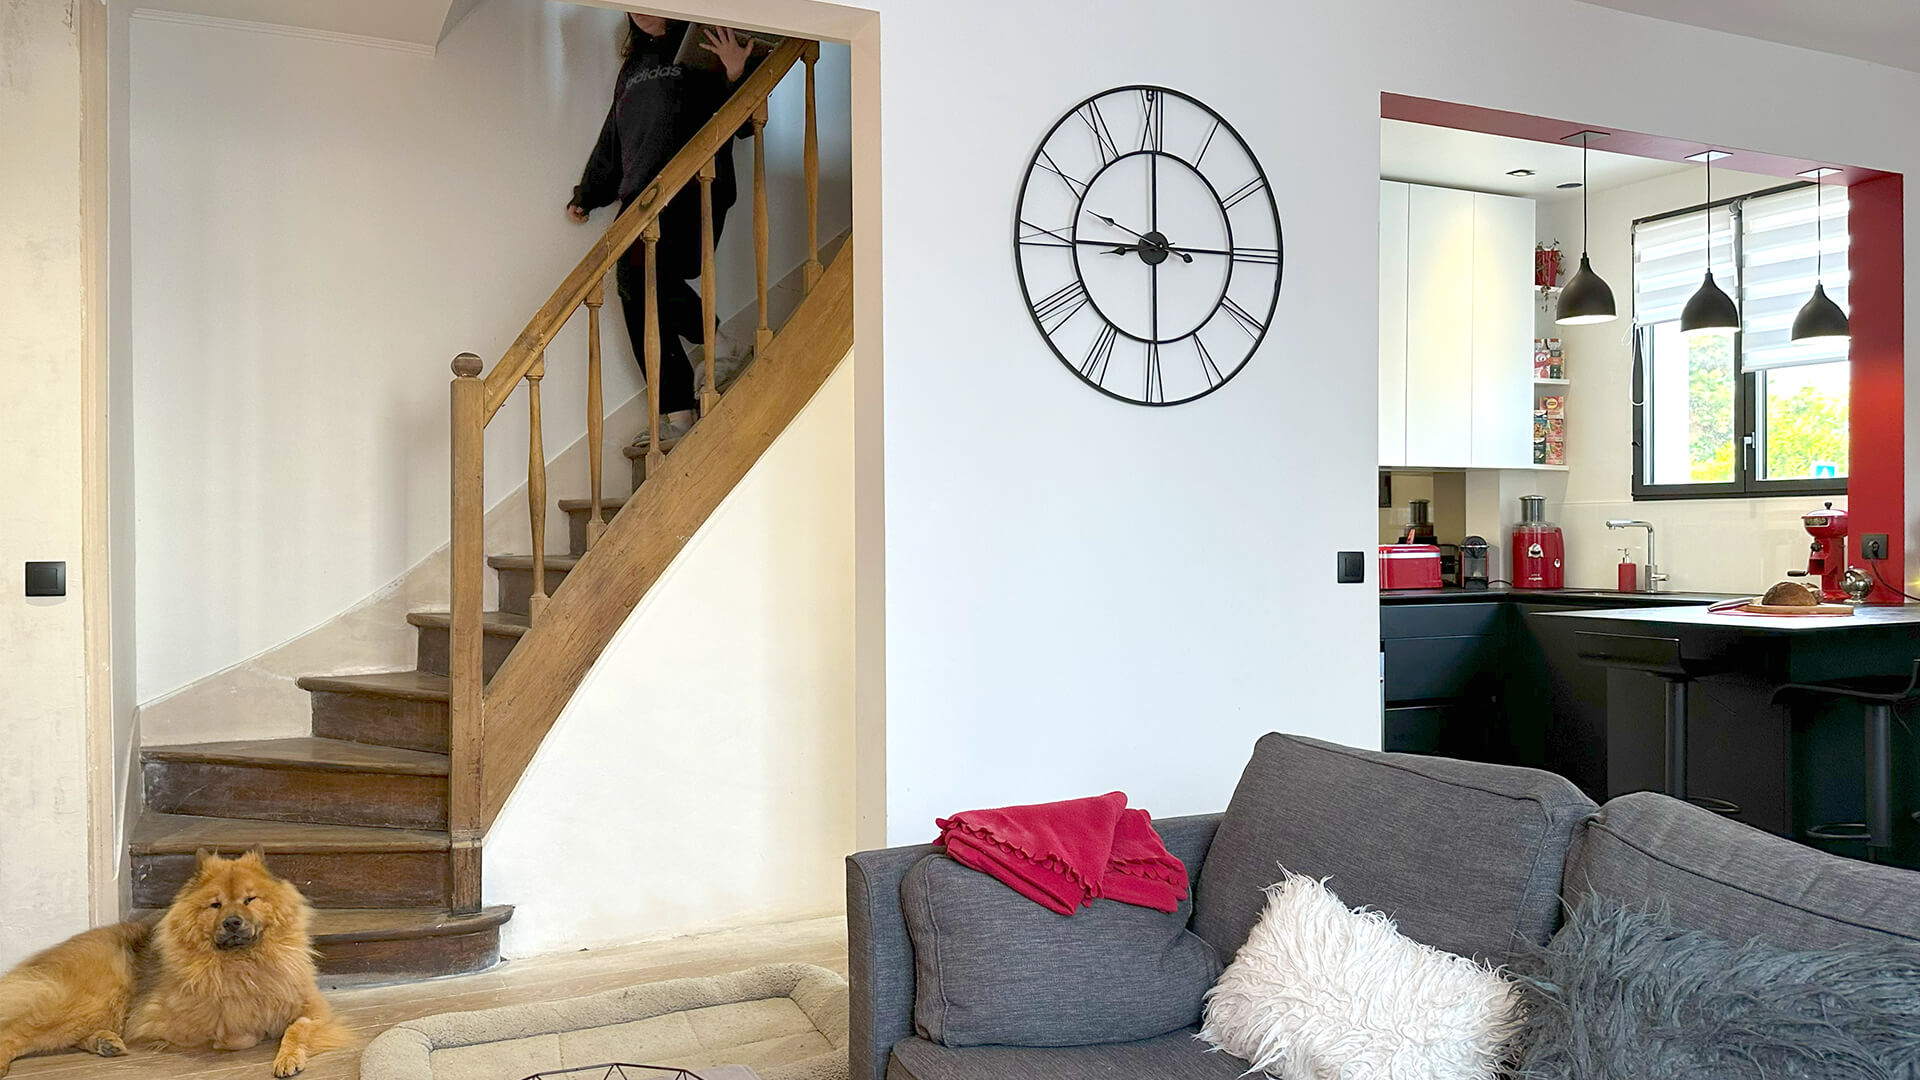 Intérieur moderne avec escalier en bois, grand horloge murale, salon et cuisine rouge.